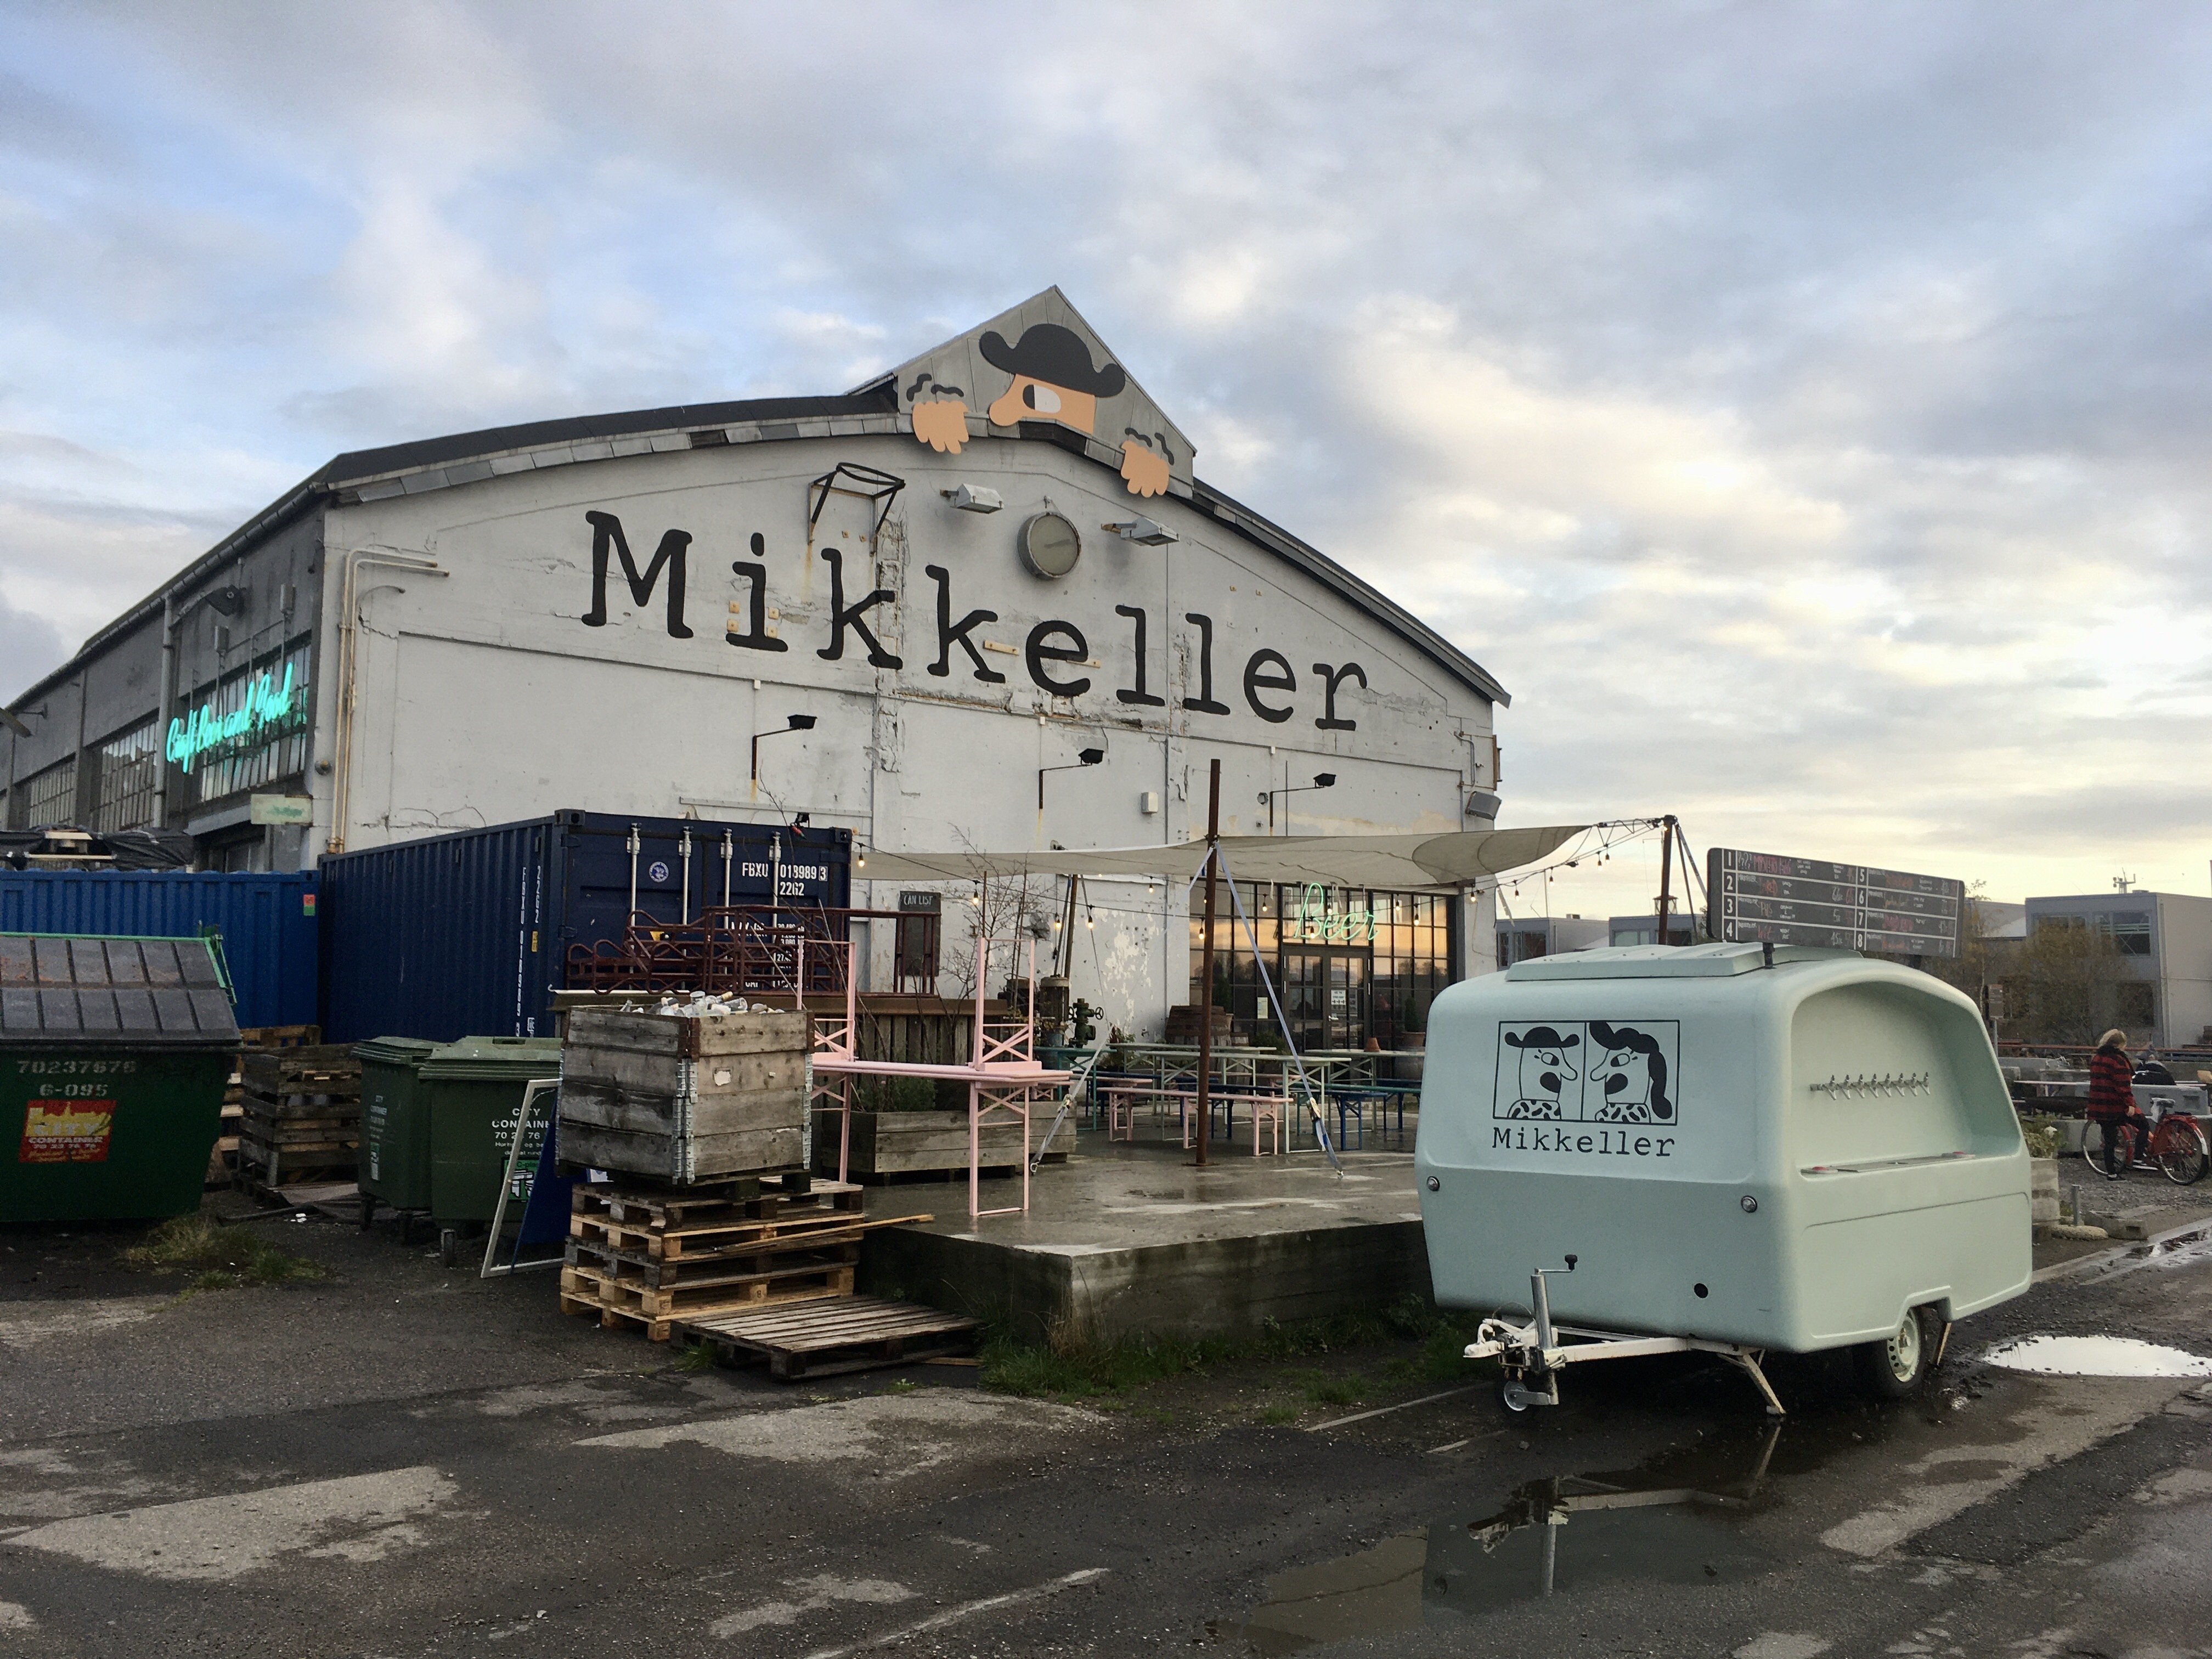 Mikkeller brewery from Denmark